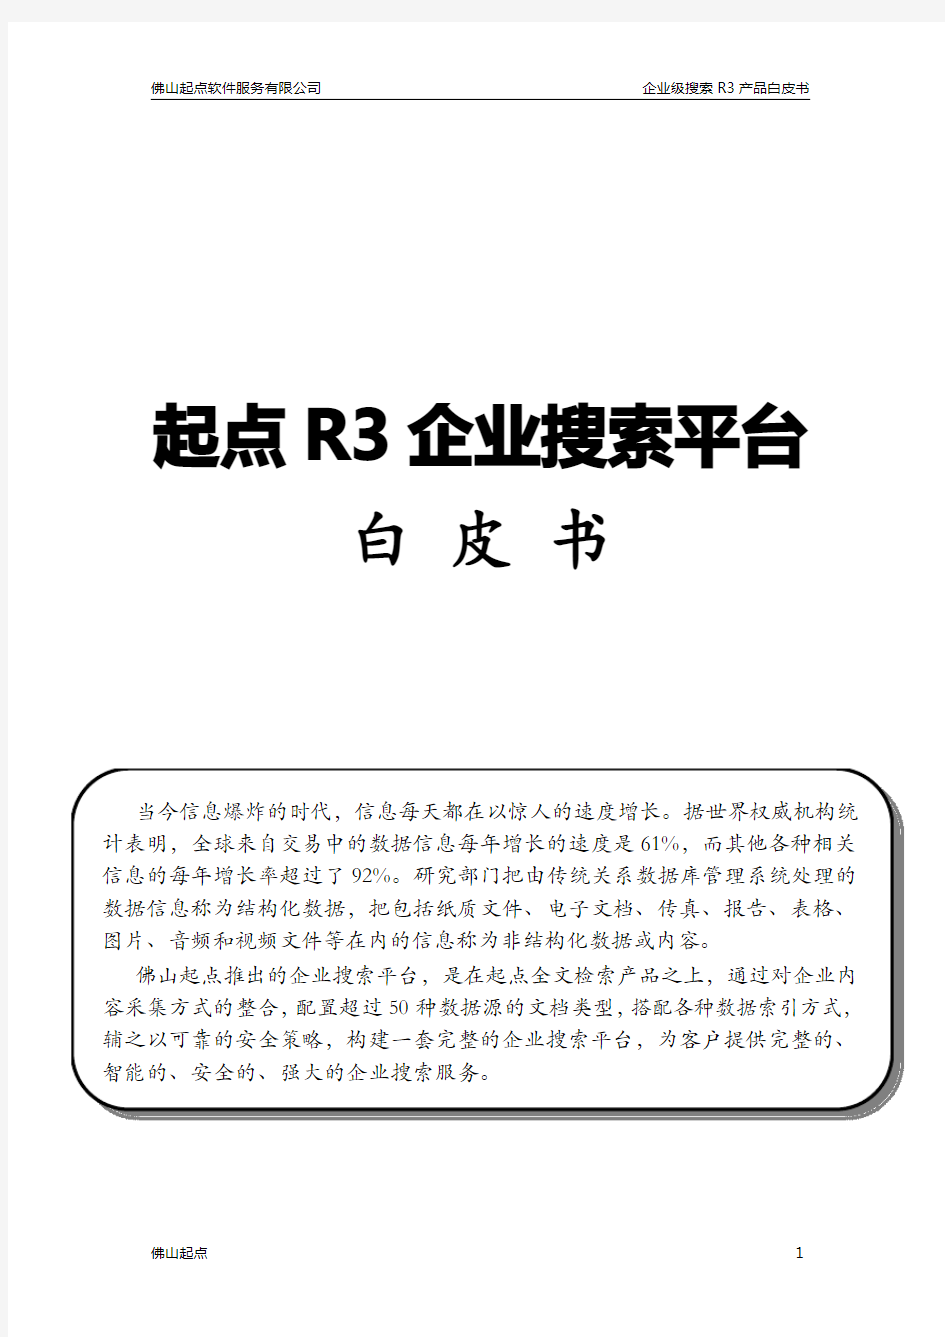 佛山起点软件服务有限公司企业搜索平台R3白皮书